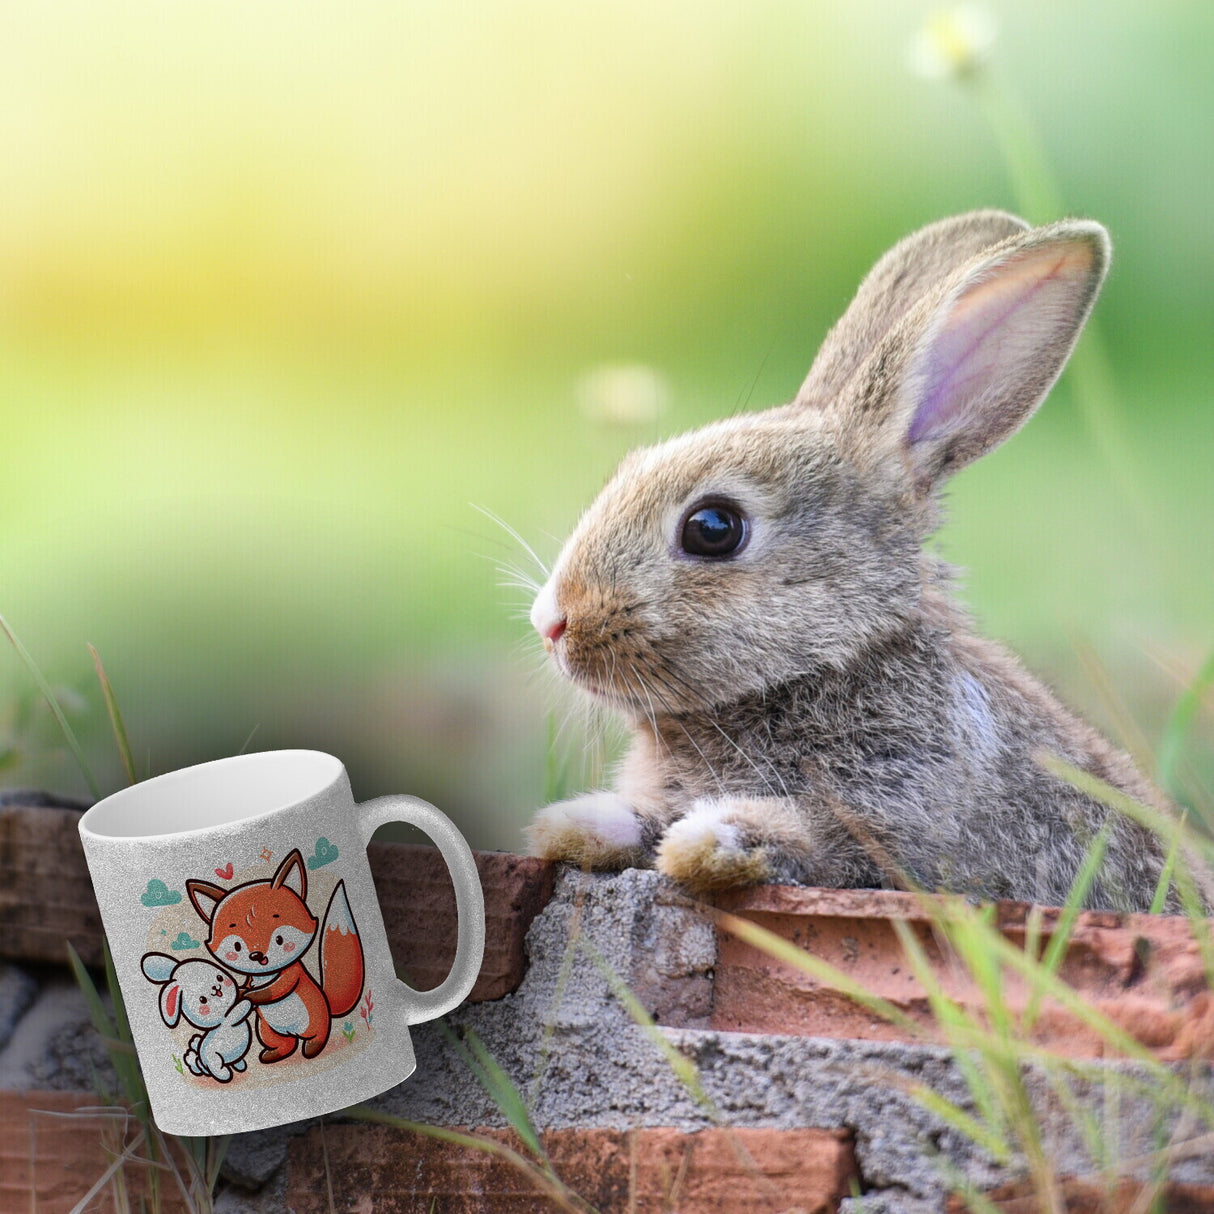 Fuchs und Kaninchen Kaffeebecher